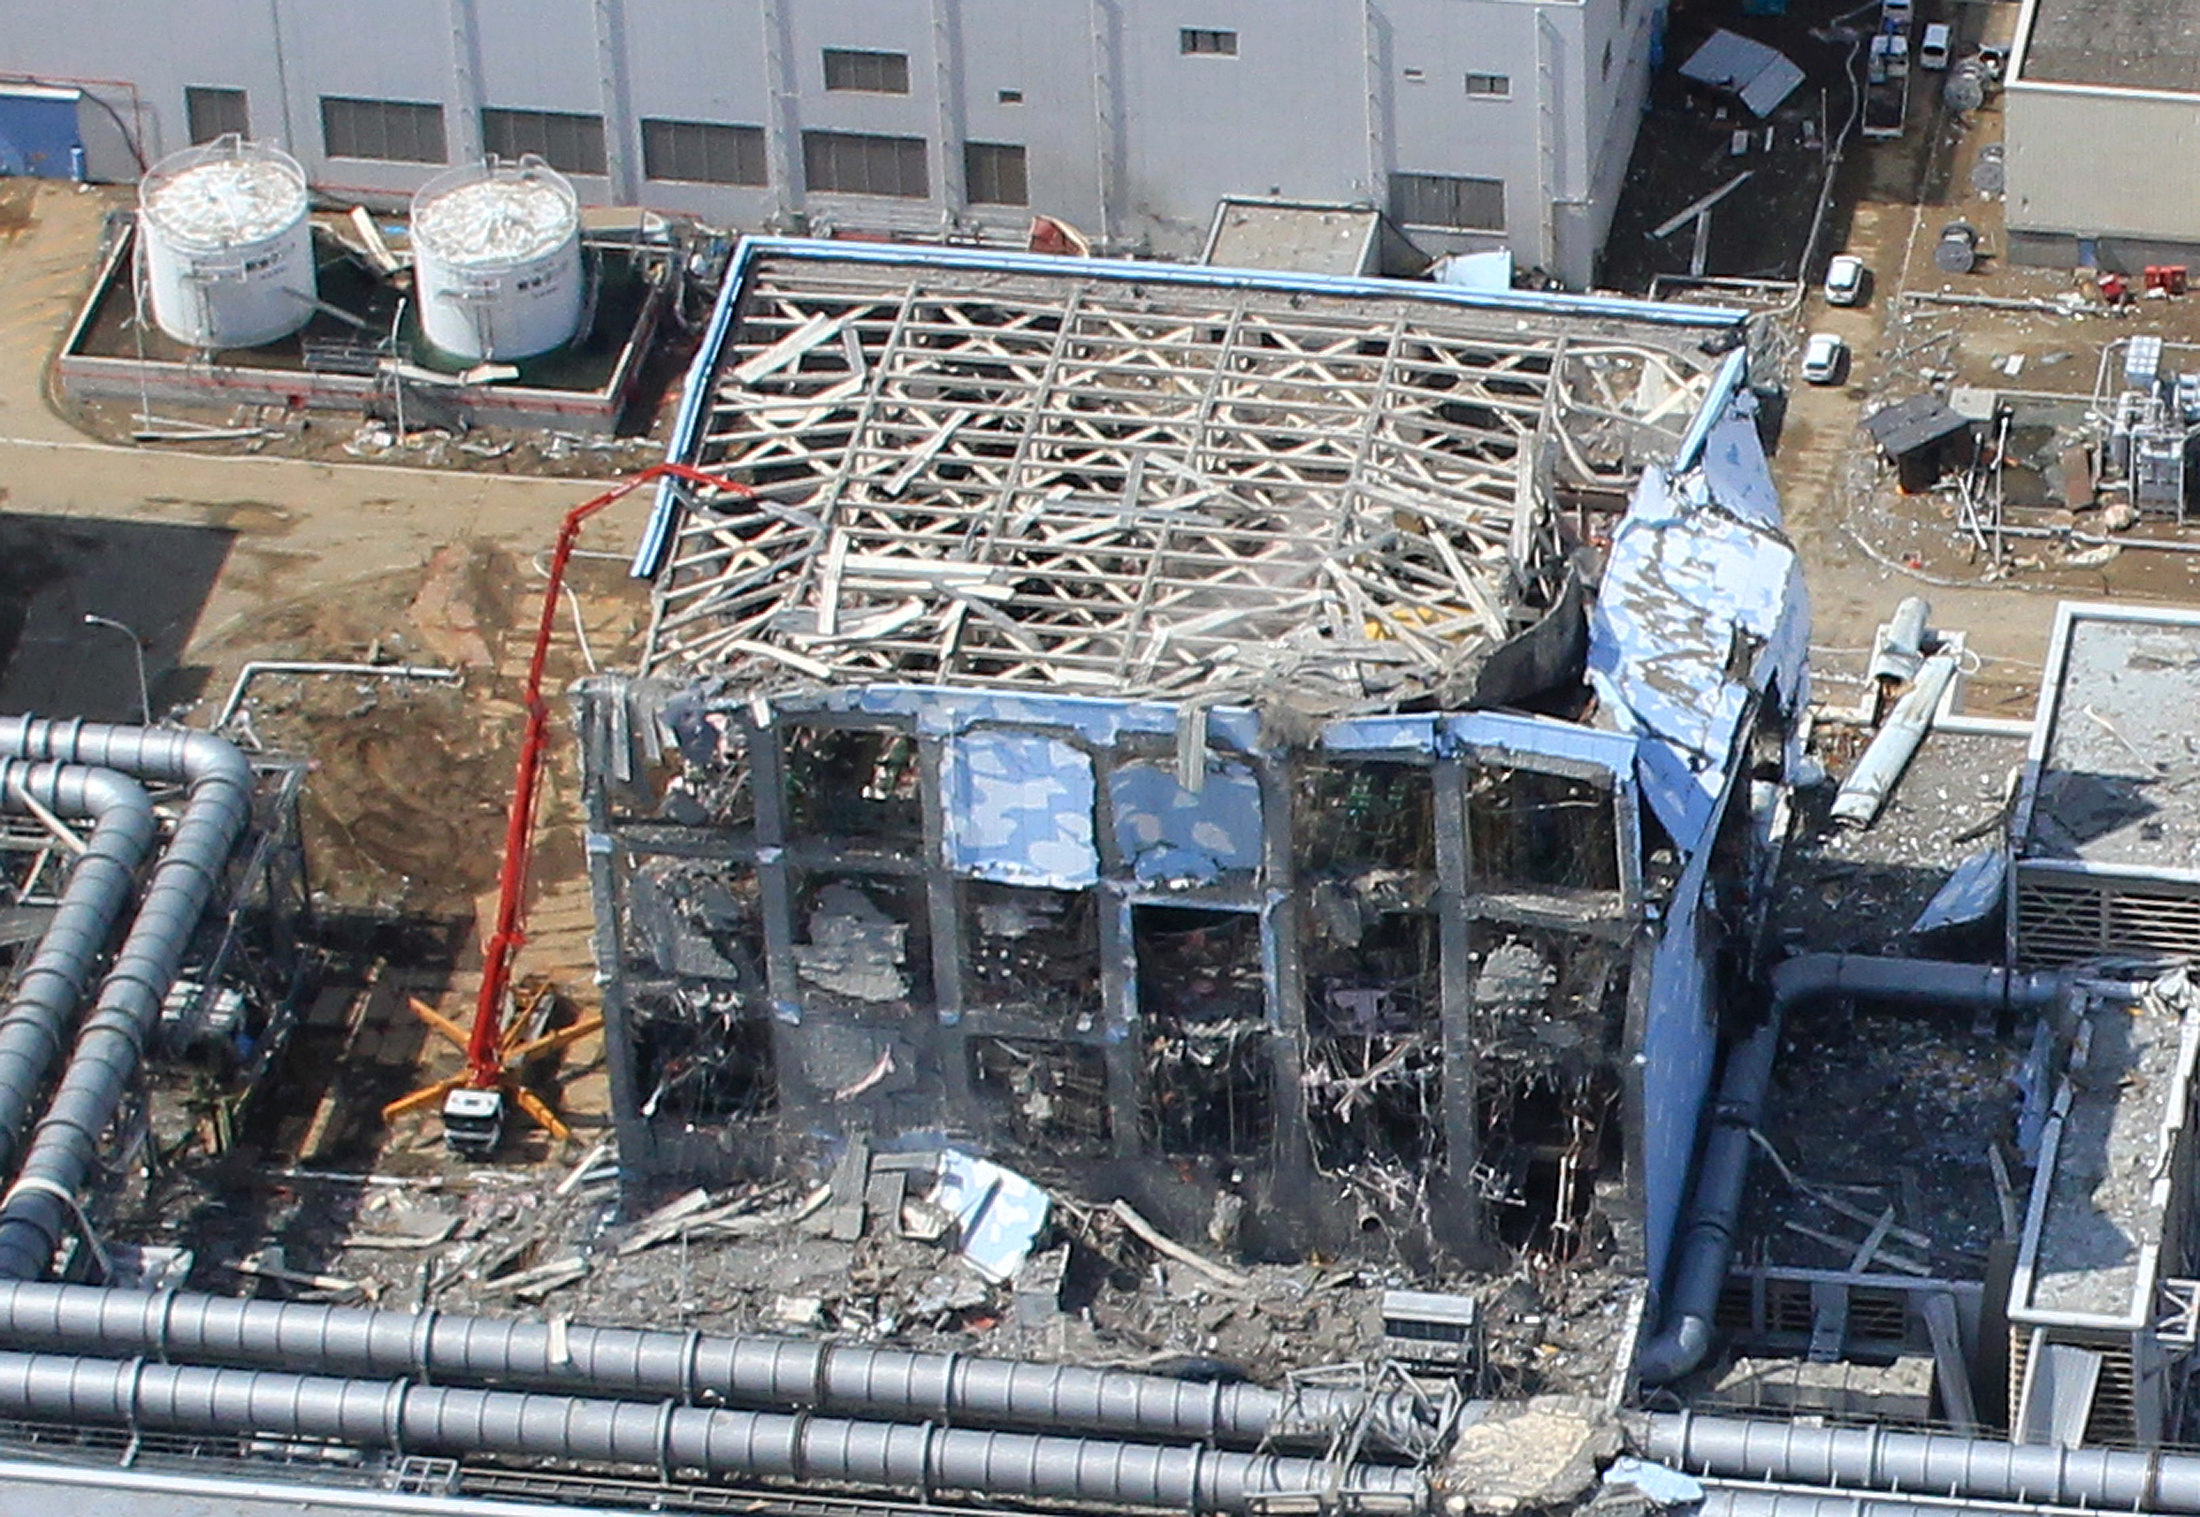 Ιαπωνία: Η καταστροφή του πυρηνικού σταθμού της Φουκουσίμα δεν είχε επιπτώσεις στην υγεία